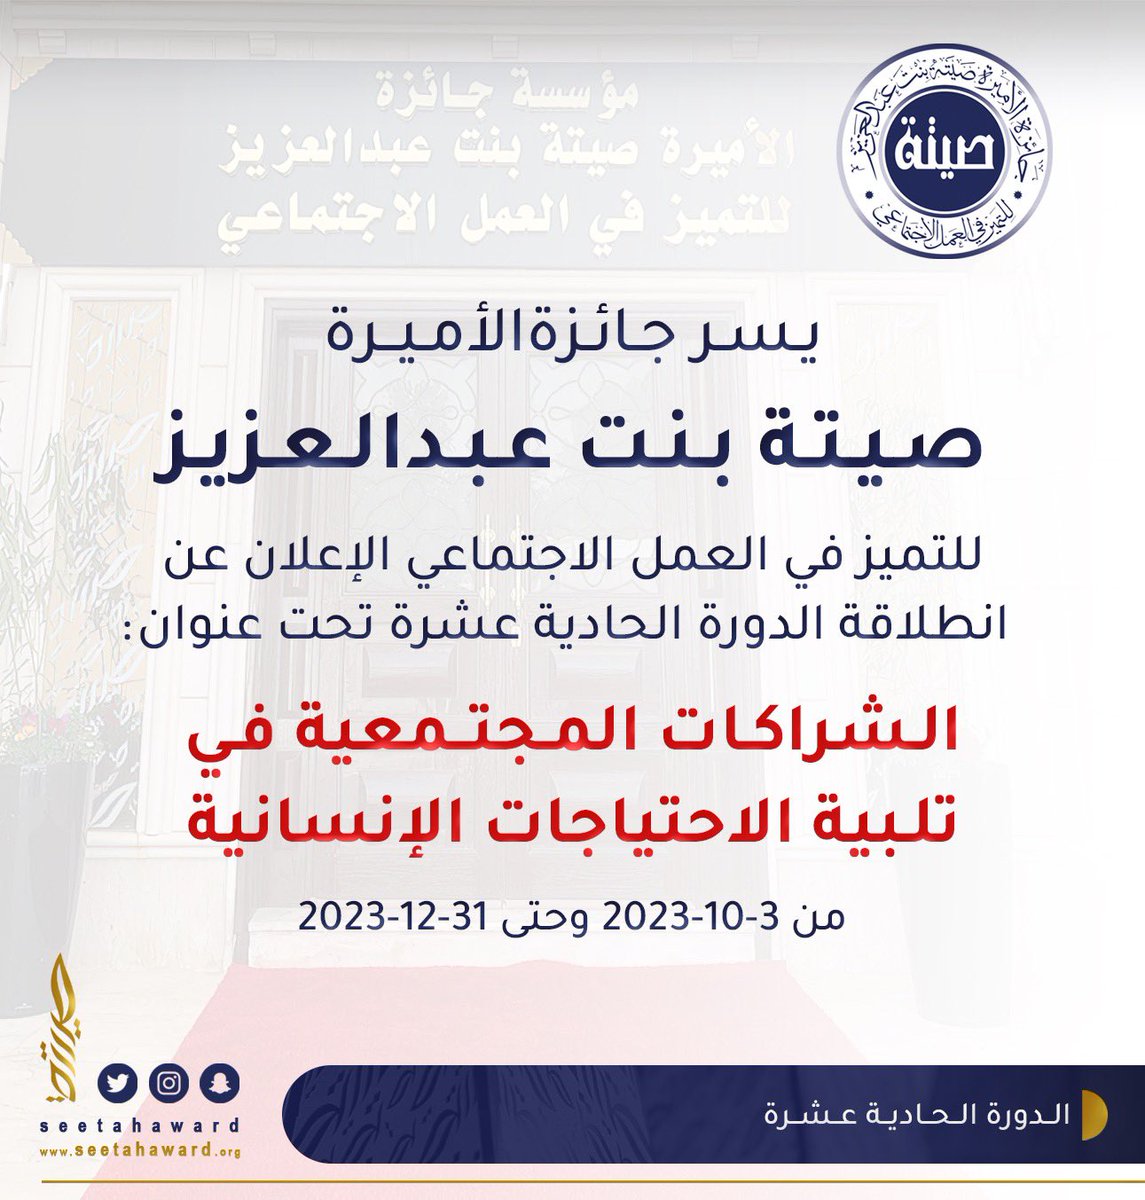 يسر جائزة الأميرة صيتة بنت عبدالعزيز للتميز في العمل الاجتماعي الإعلان عن انطلاقة الدورة الحادية عشرة تحت عنوان ( الشراكات المجتمعية في تلبية الاحتياجات الإنسانية ) 